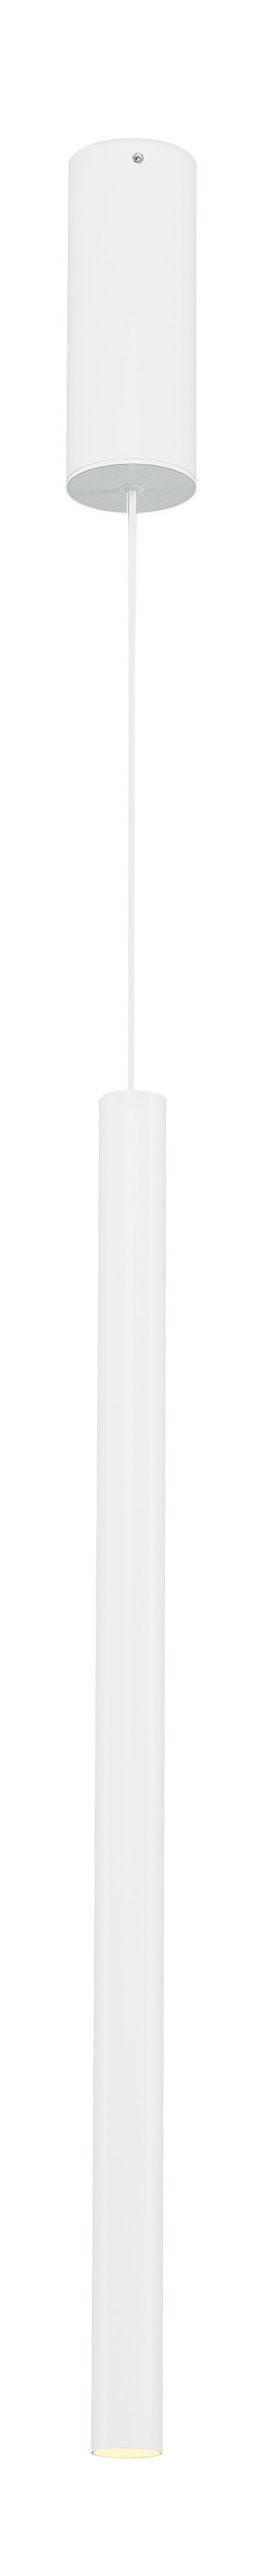 Lámpara suspensión modelo Helia acabado en blanco